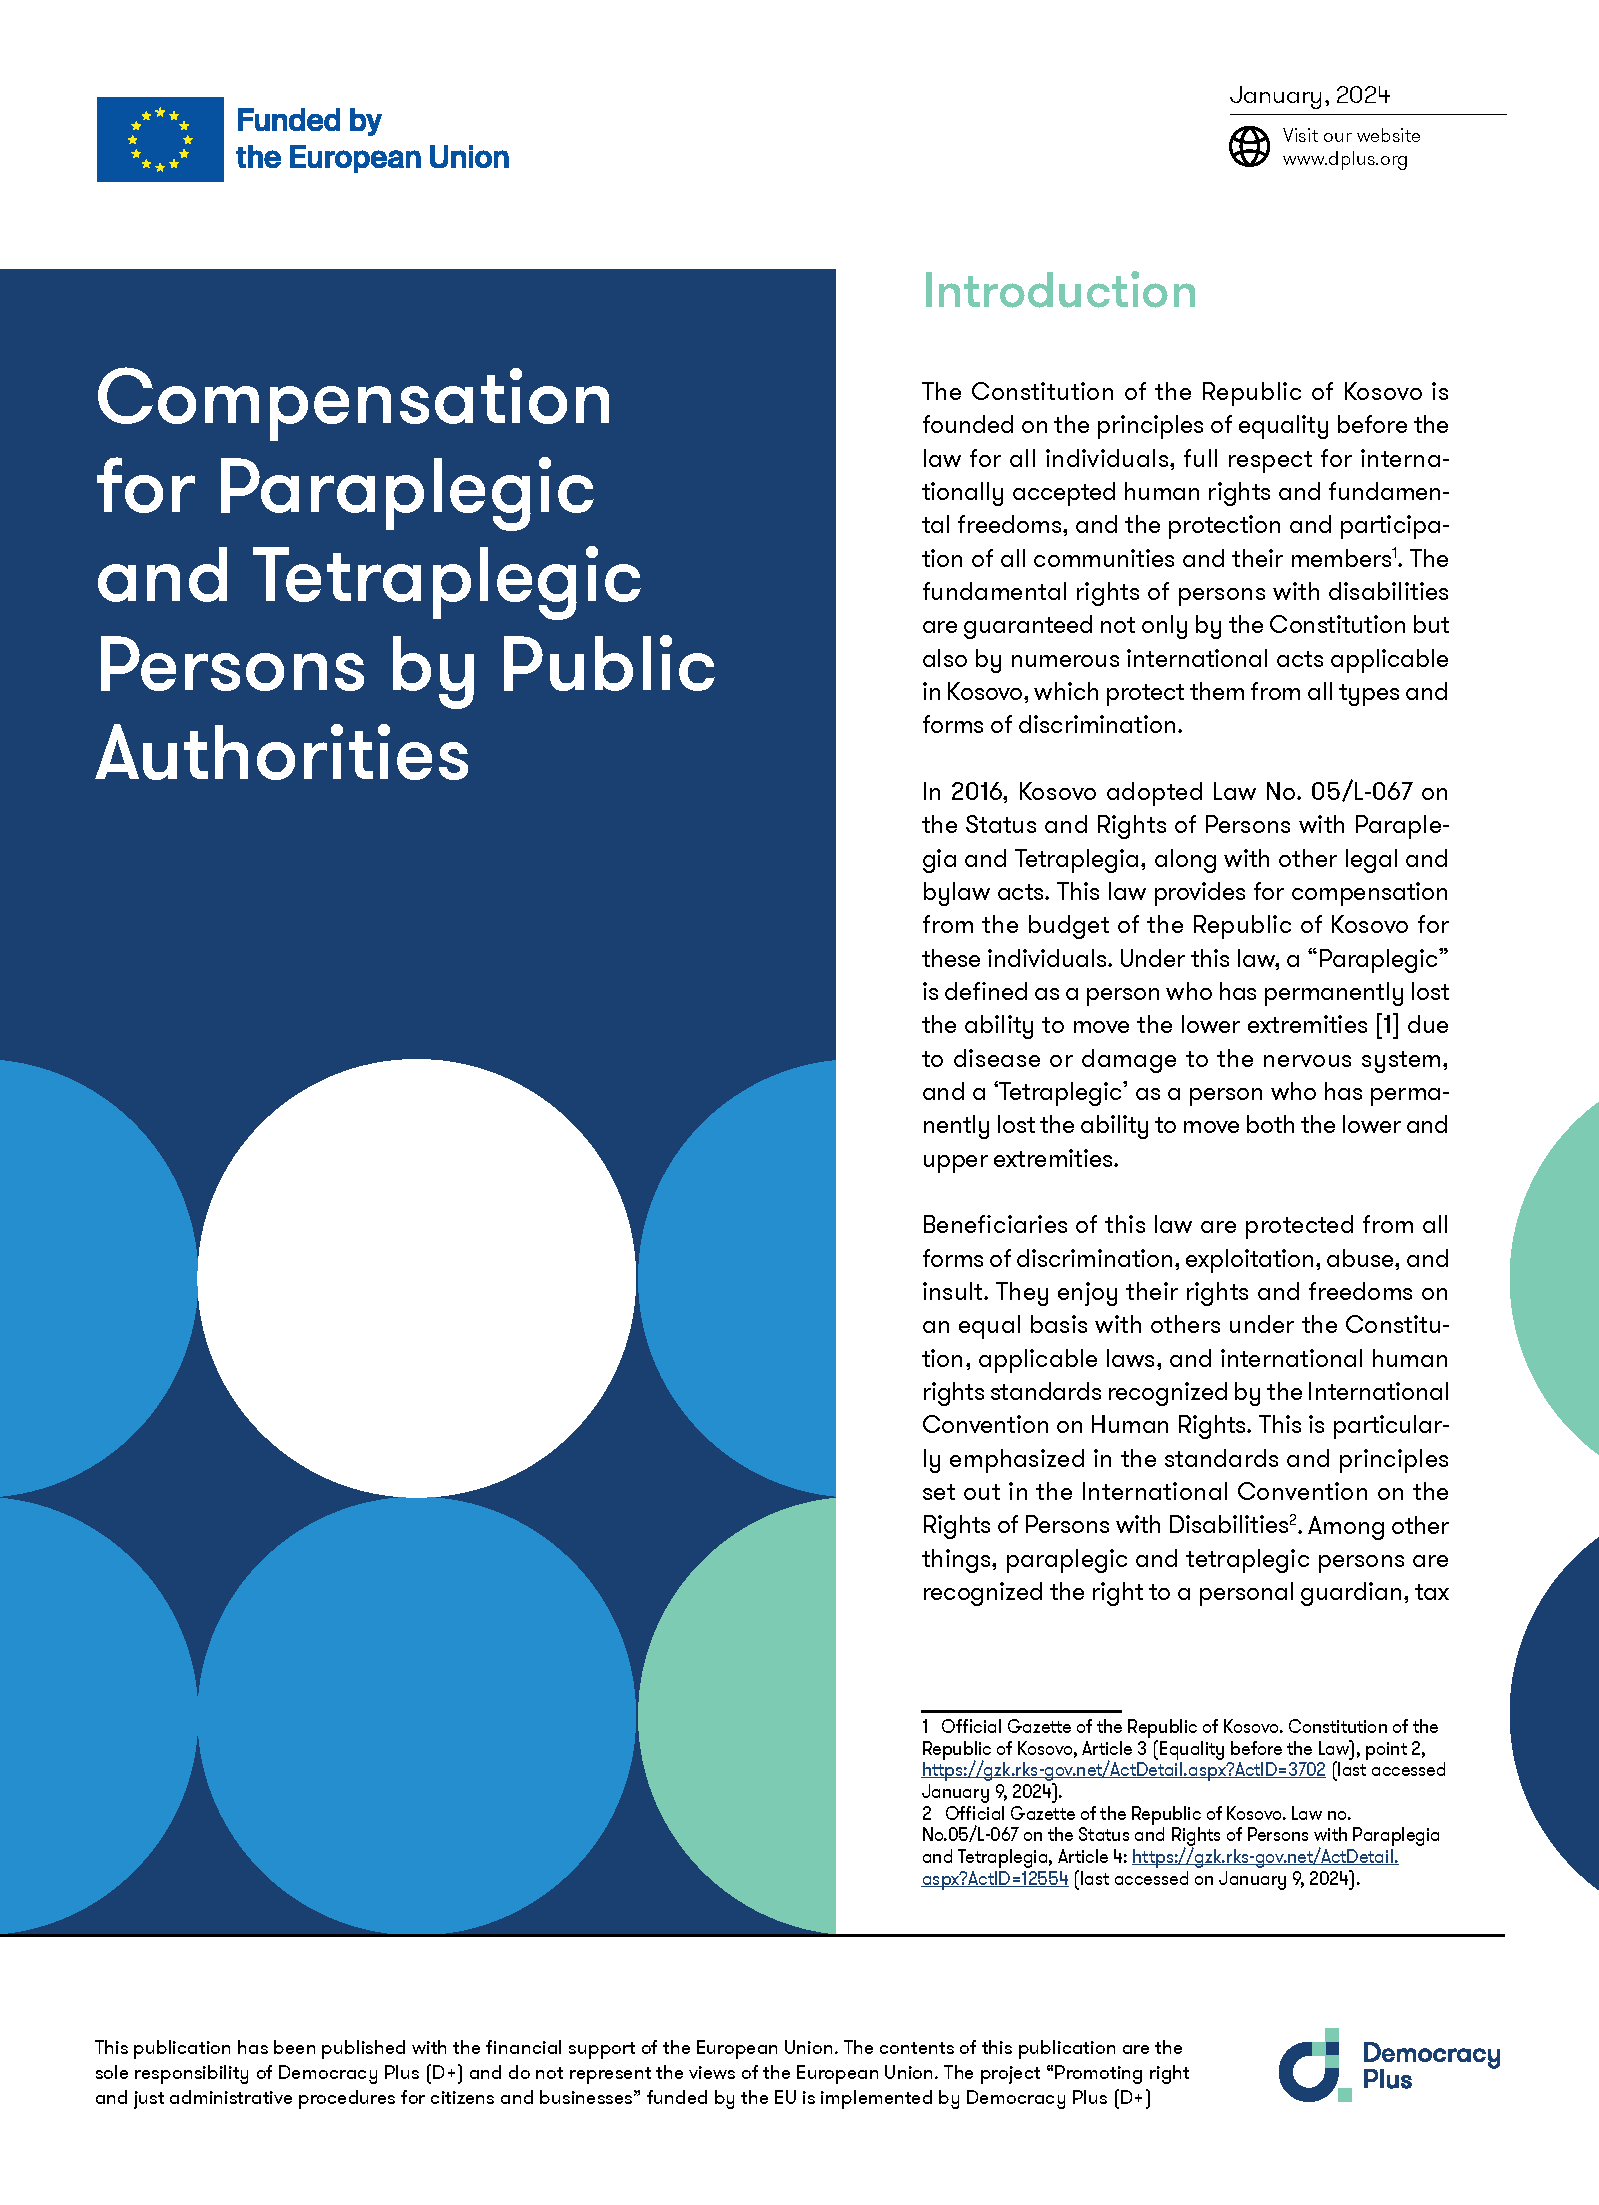 Compensation for Paraplegic and Tetraplegic Persons by Public Authorities